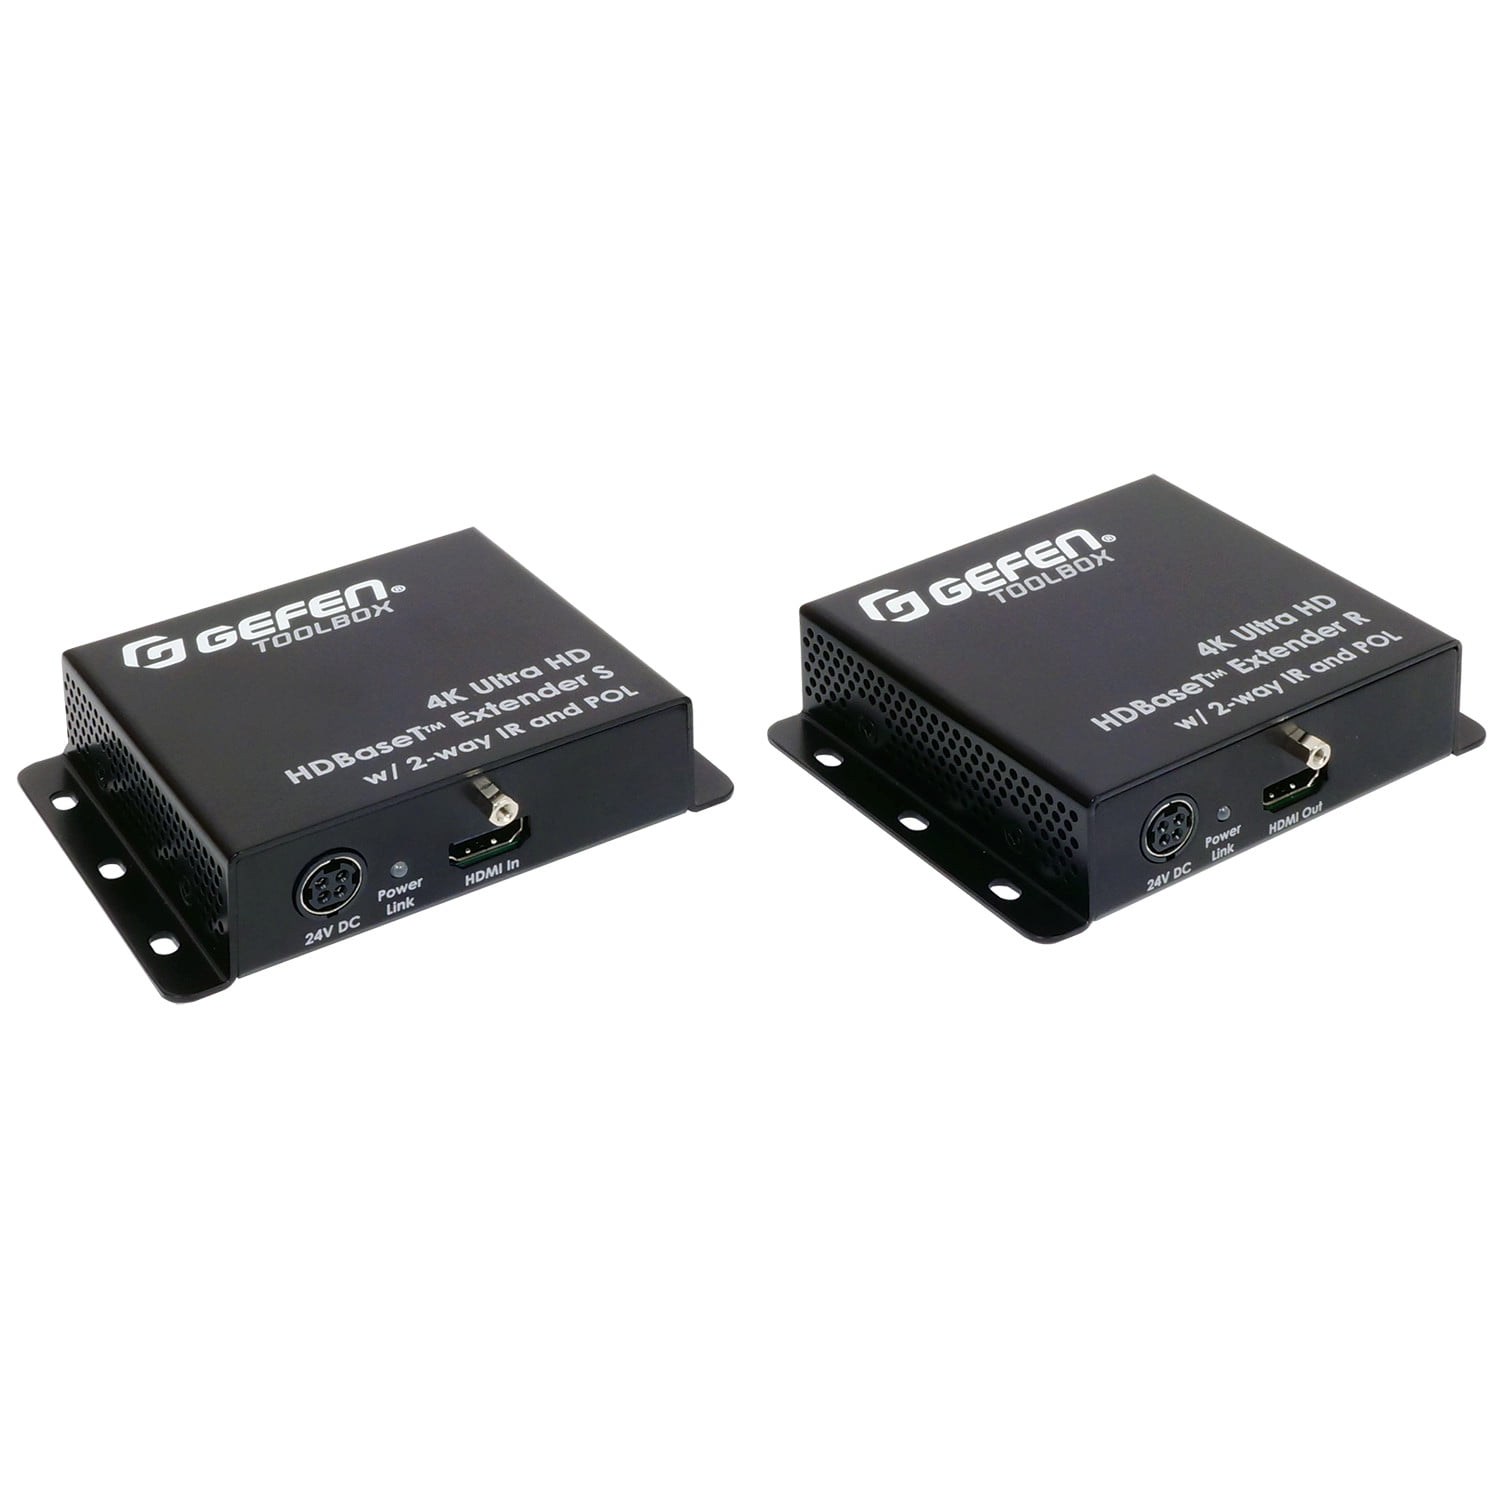 GTB-UHD-HBTL Video Extender Transmitter/Receiver - - Walmart.com